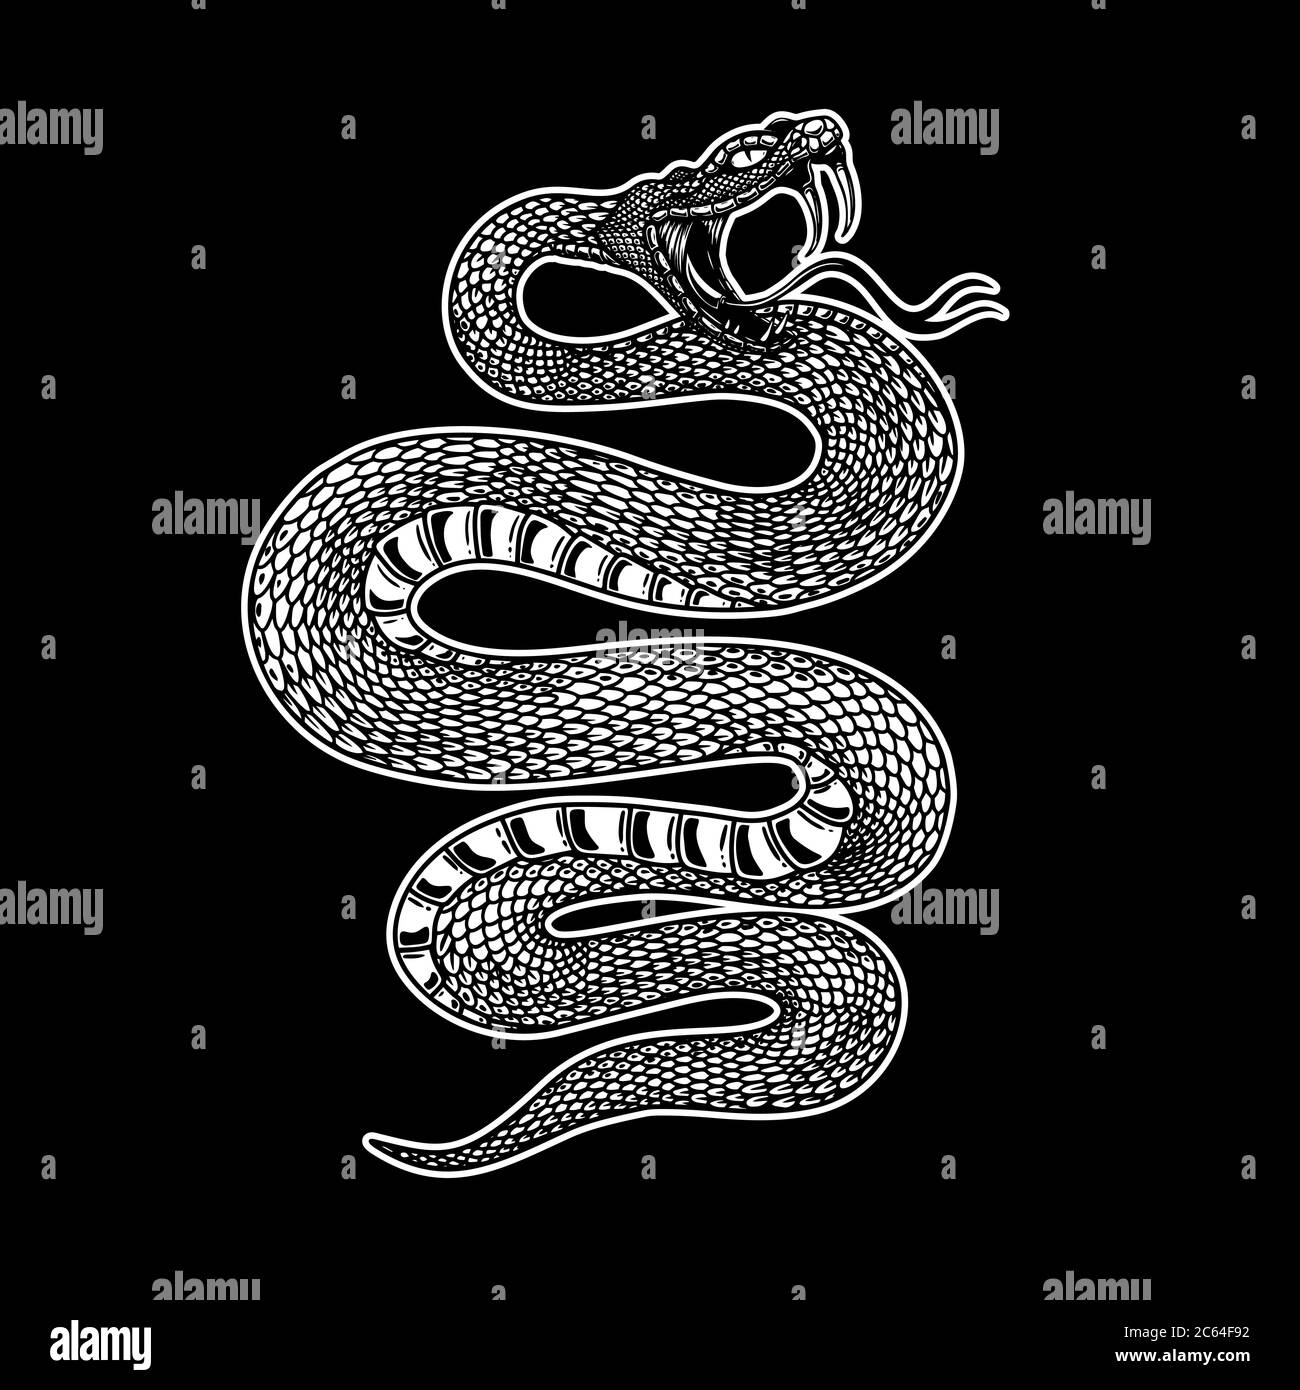 Illustration of poisonous snake  in engraving style. Design element for logo, label, emblem, sign, badge. Vector illustration Stock Vector